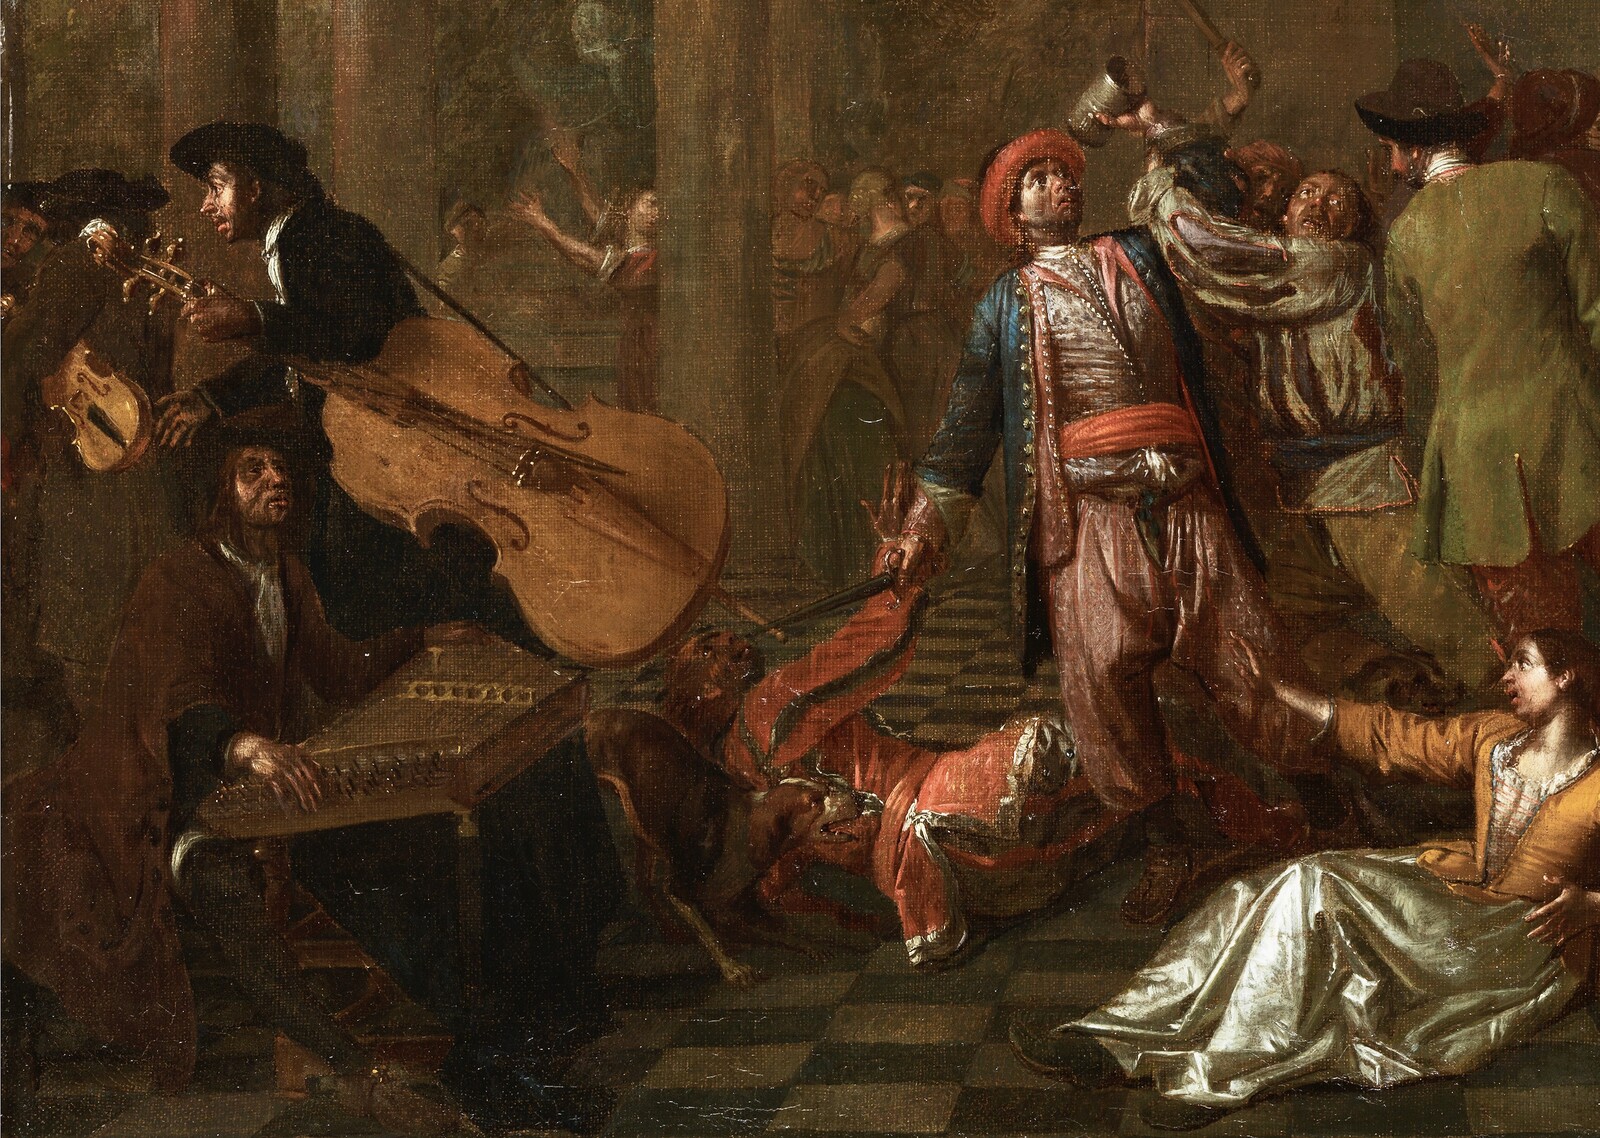 A quarrel during a Commedia dell’Arte performance